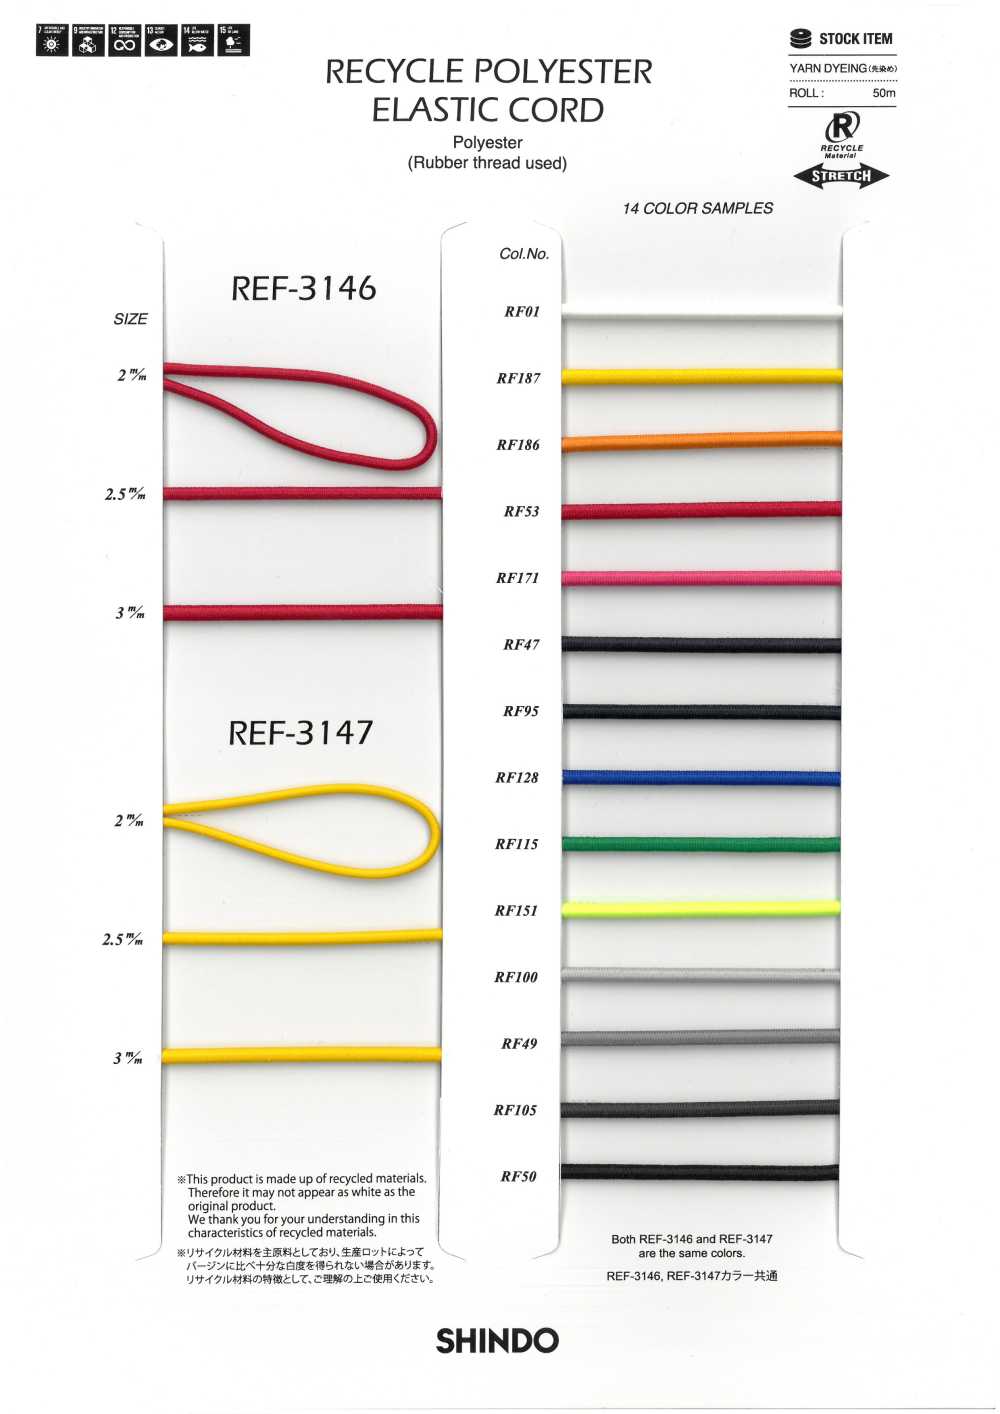 REF-3147 リサイクルポリエステル エラスティックコード (ハードタイプ)[リボン・テープ・コード] SHINDO(SIC)